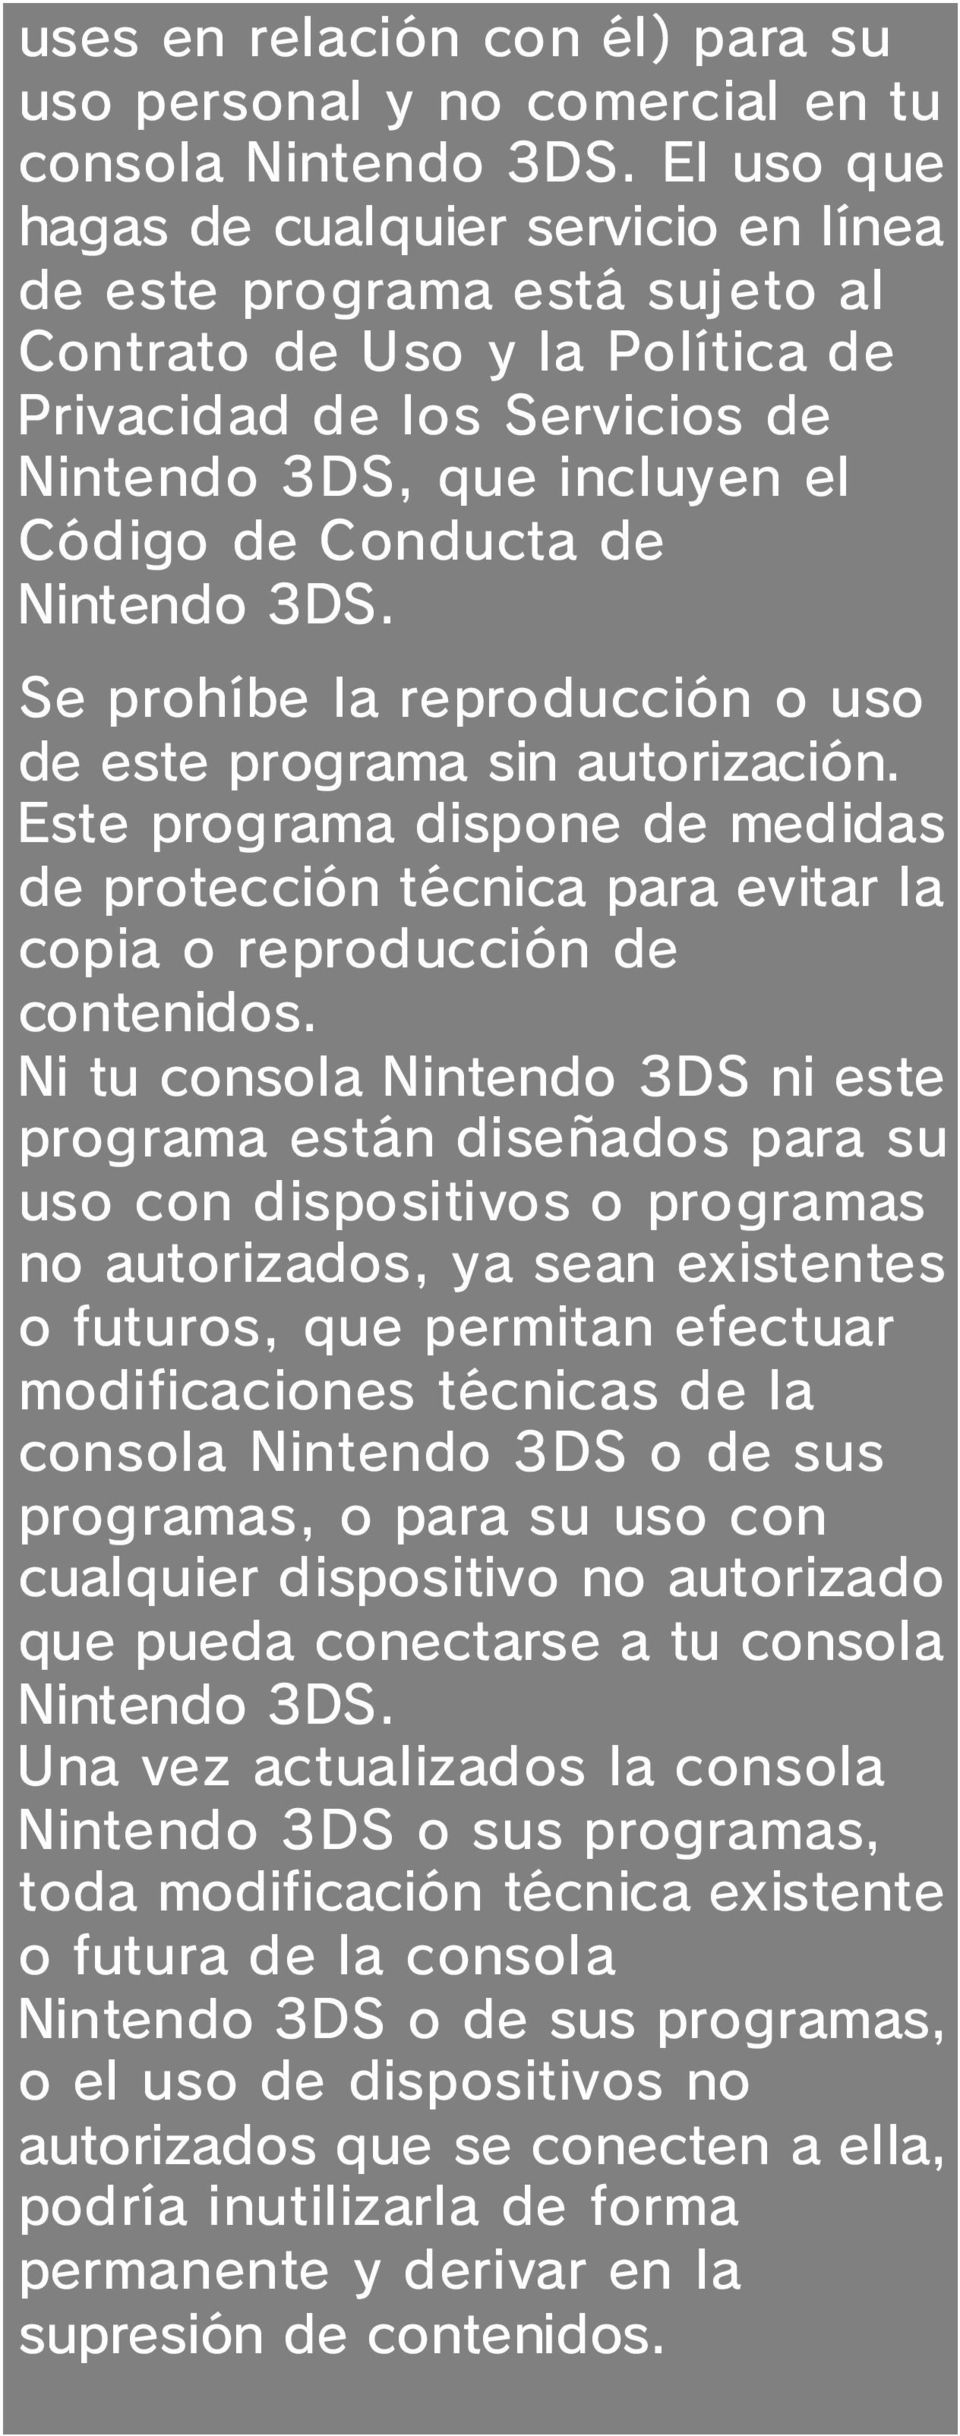 Nintendo 3DS. Se prohíbe la reproducción o uso de este programa sin autorización. Este programa dispone de medidas de protección técnica para evitar la copia o reproducción de contenidos.